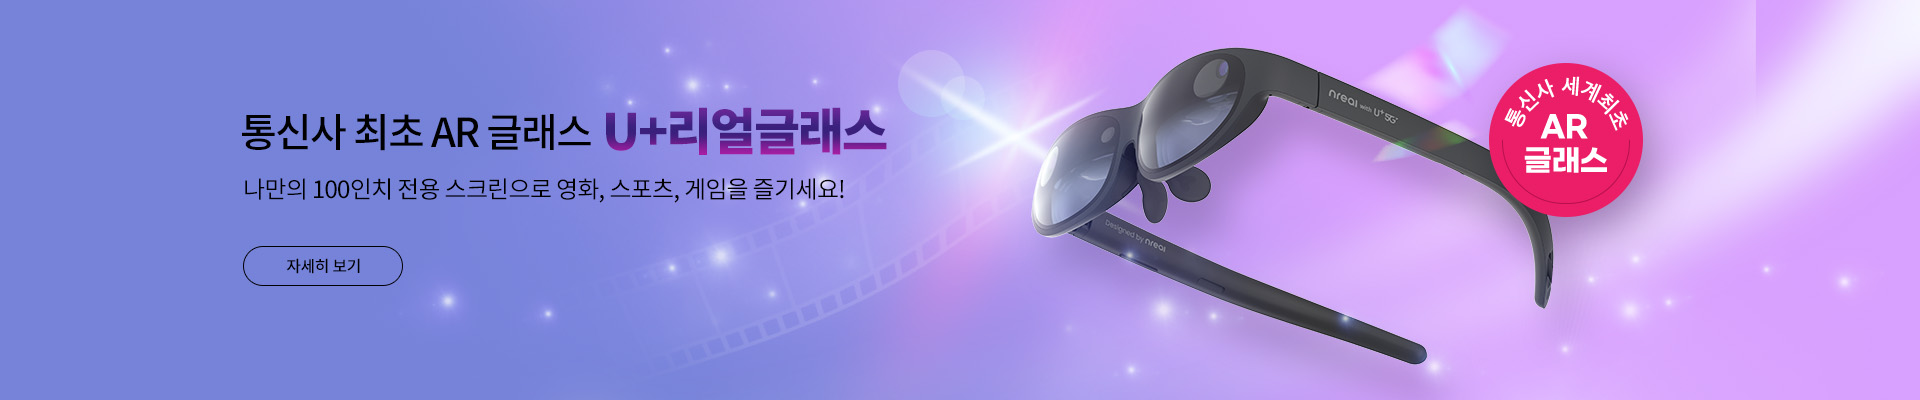 통신사 최초 AR 글래스 'U+ 리얼글래스' 나만의 100인치 스크린으로 영화, 스포츠, 게임까지!